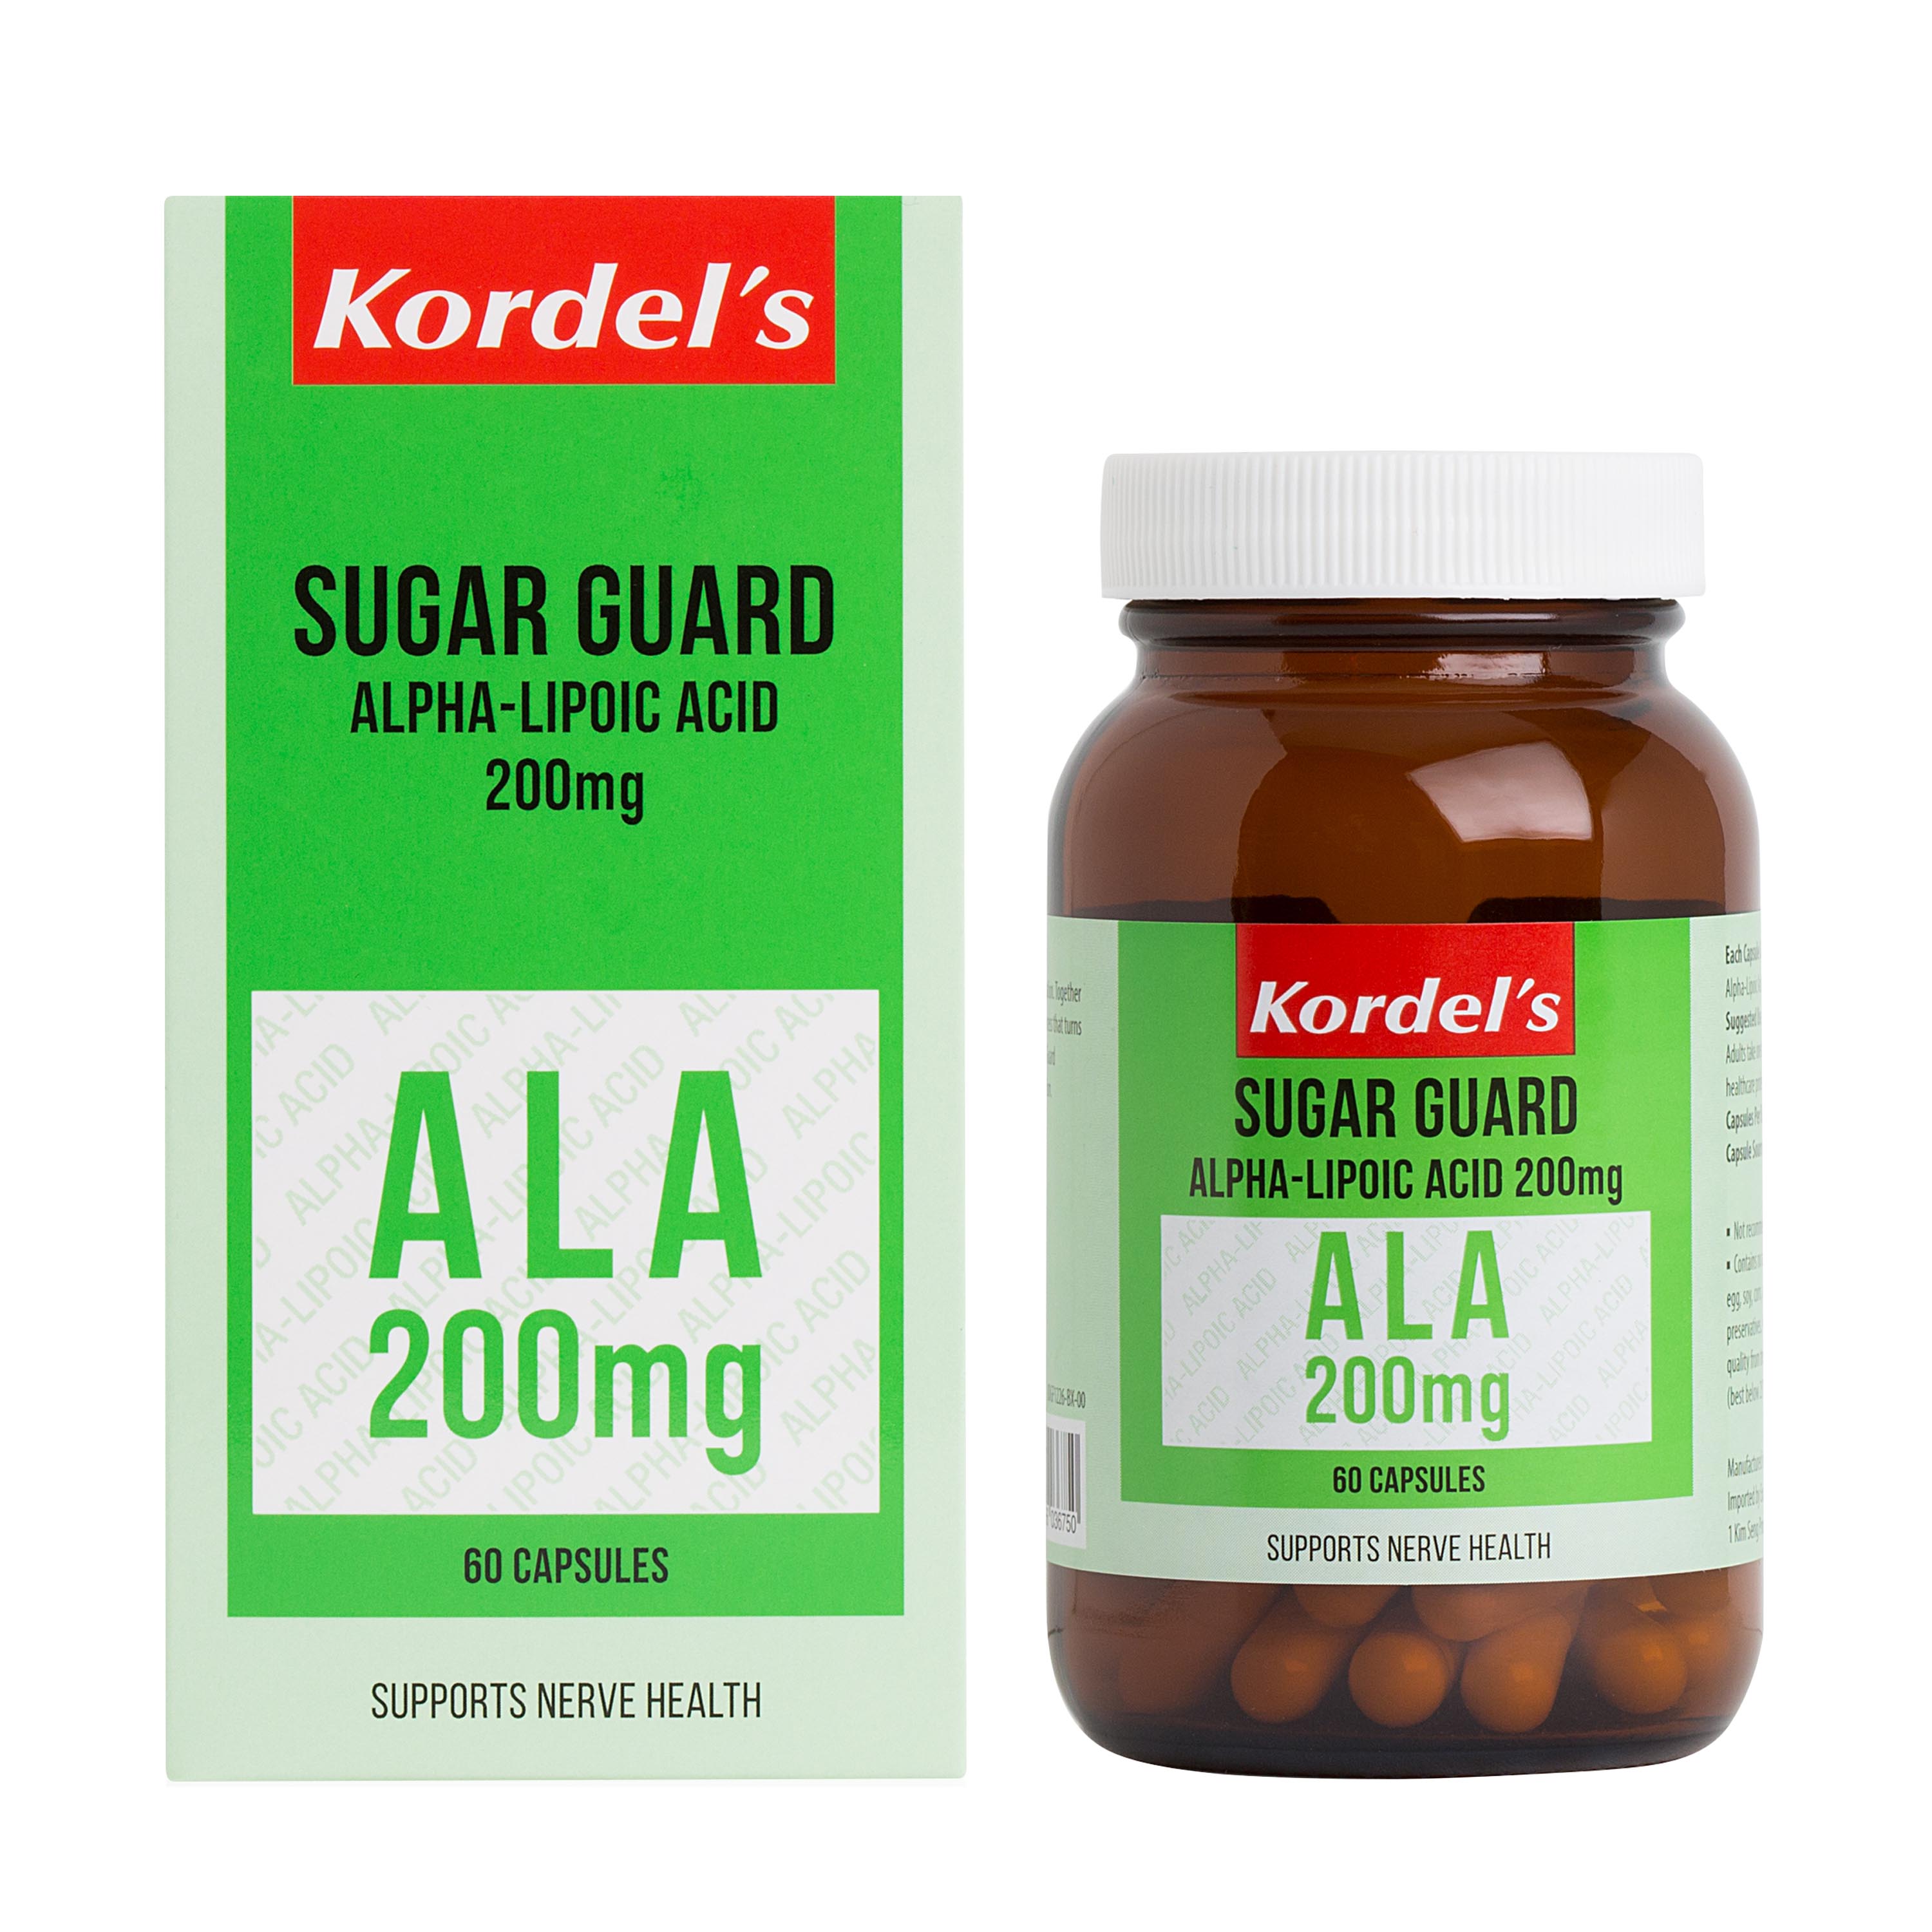 Kordel's Sugar Guard Alpha-Lipoic Acid 200 mg 60 Capsules